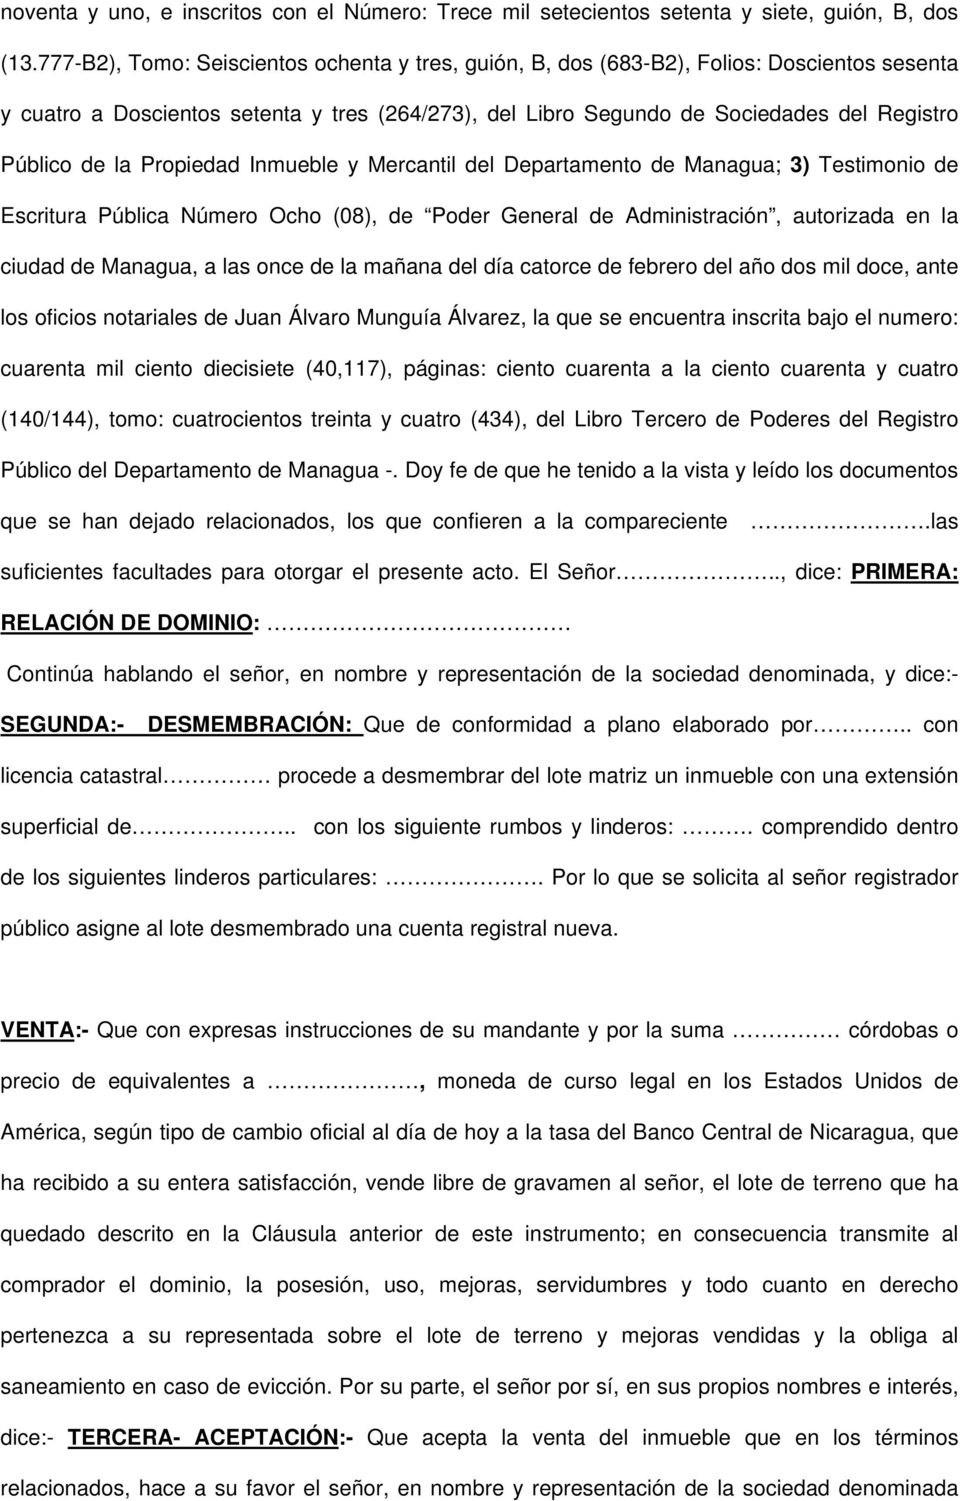 la Propiedad Inmueble y Mercantil del Departamento de Managua; 3) Testimonio de Escritura Pública Número Ocho (08), de Poder General de Administración, autorizada en la ciudad de Managua, a las once